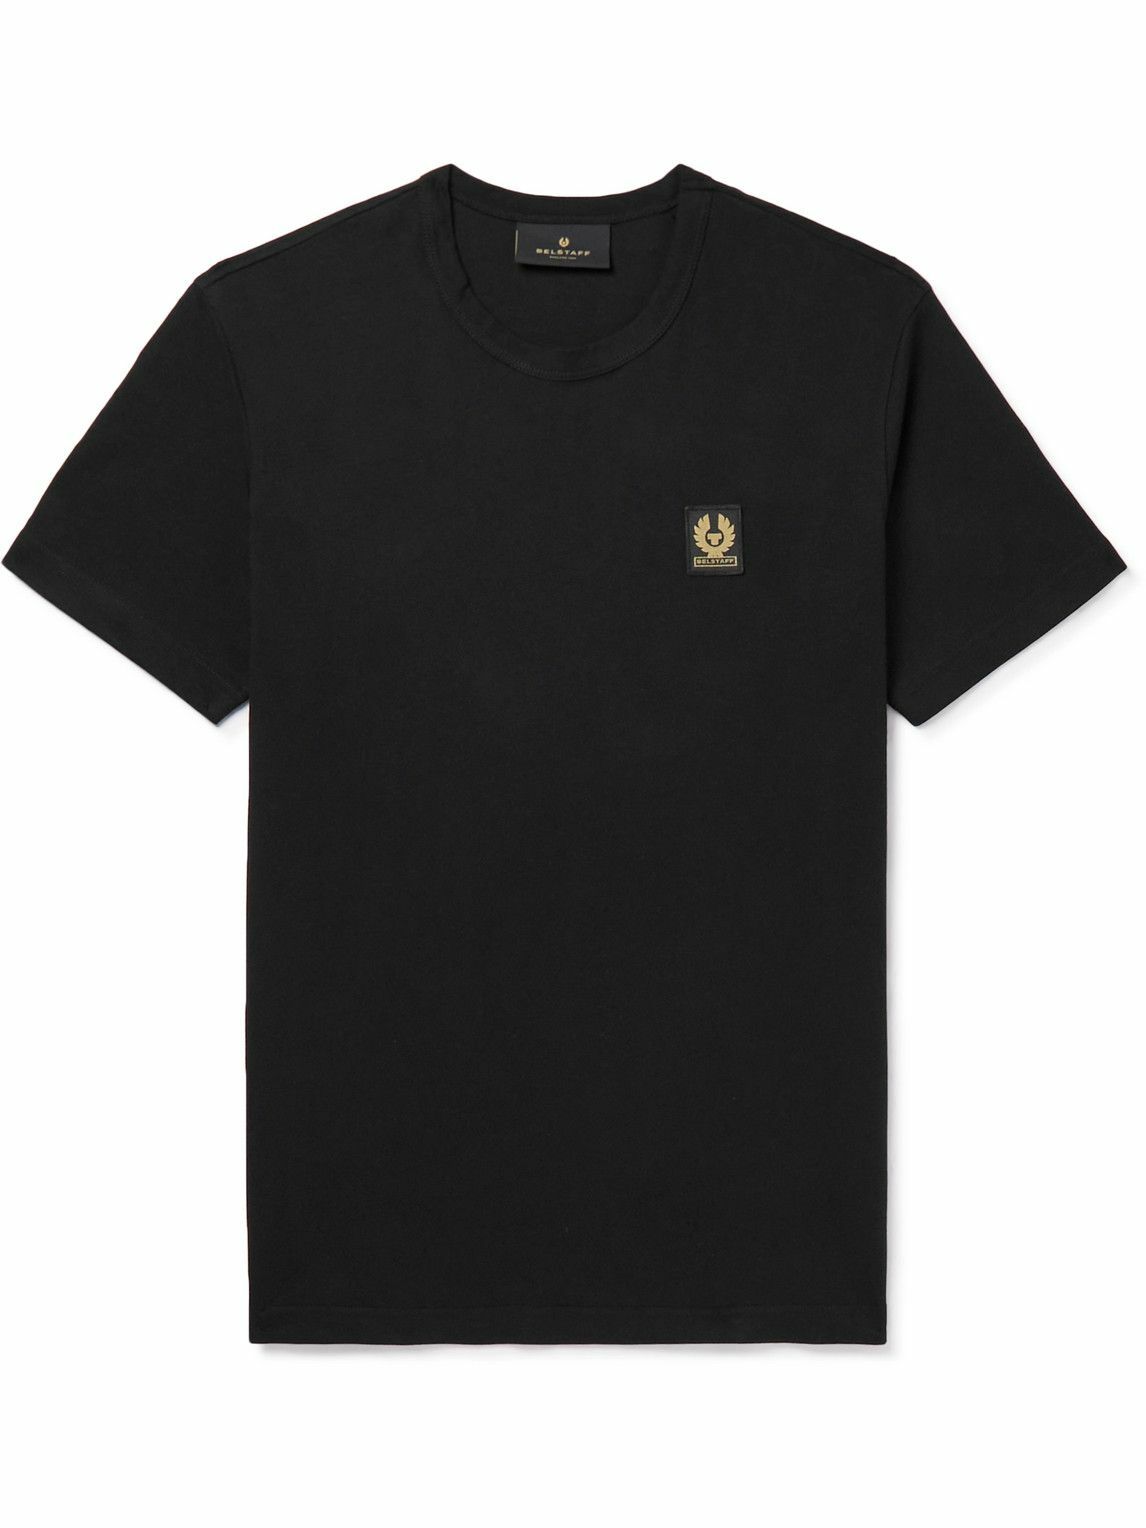 Belstaff - Logo-Appliquéd Cotton-Jersey T-Shirt - Black Belstaff